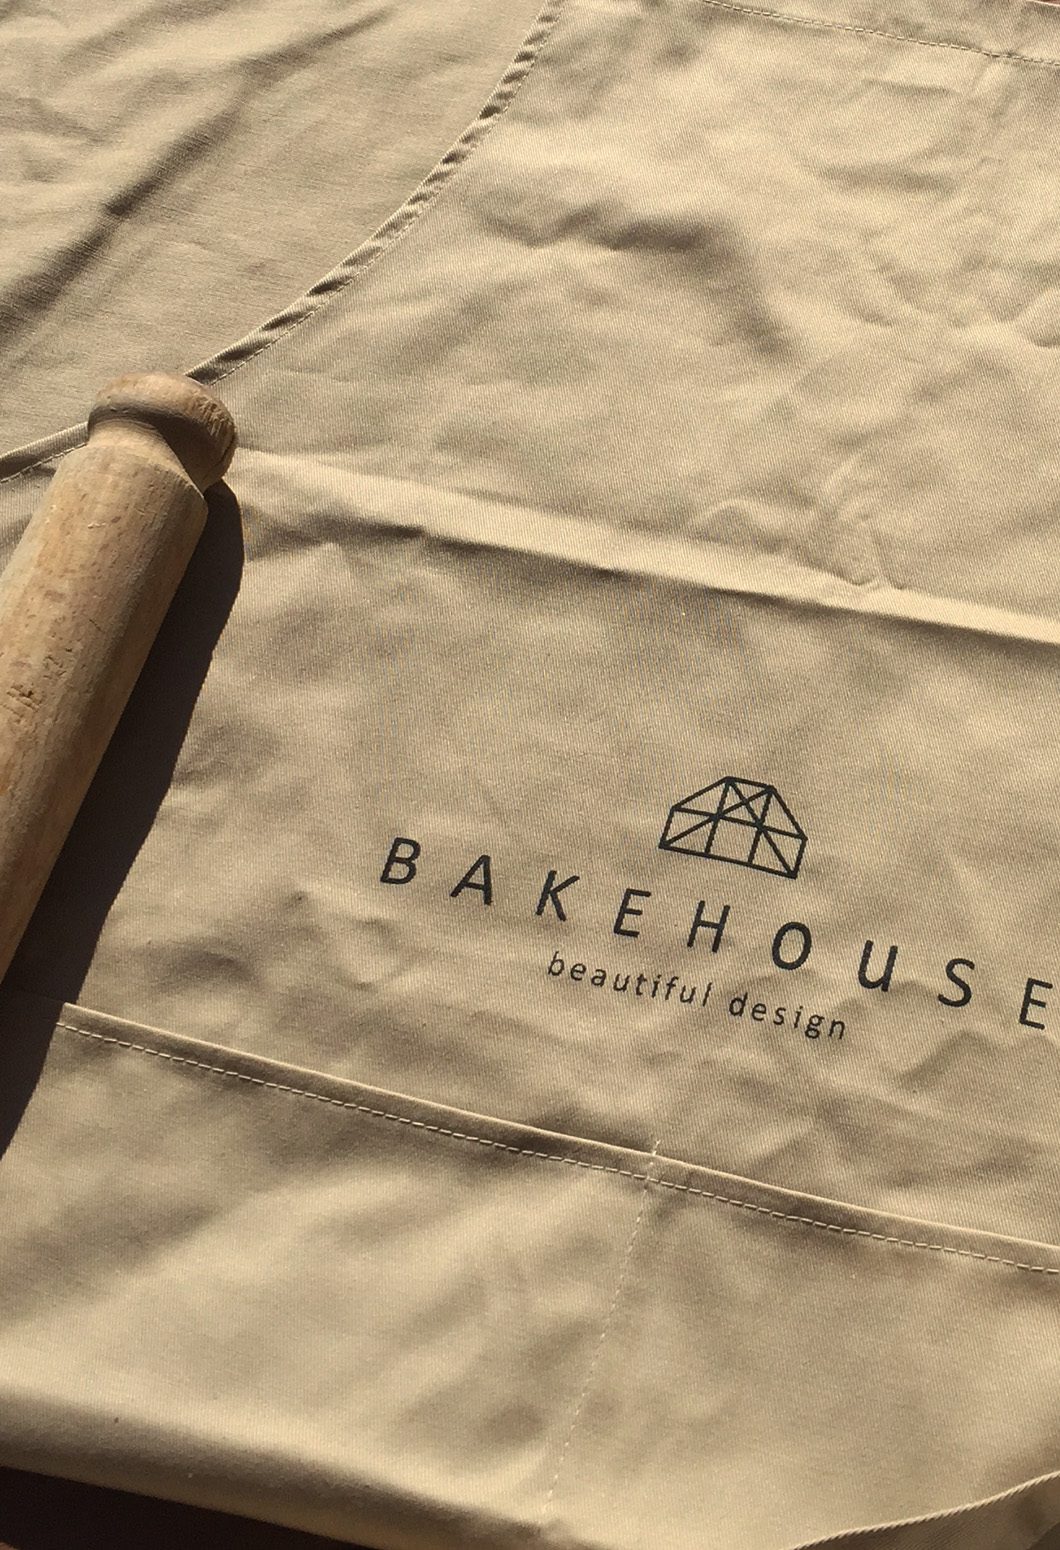 Close up of Bkaehouse Kitchens luxury apron